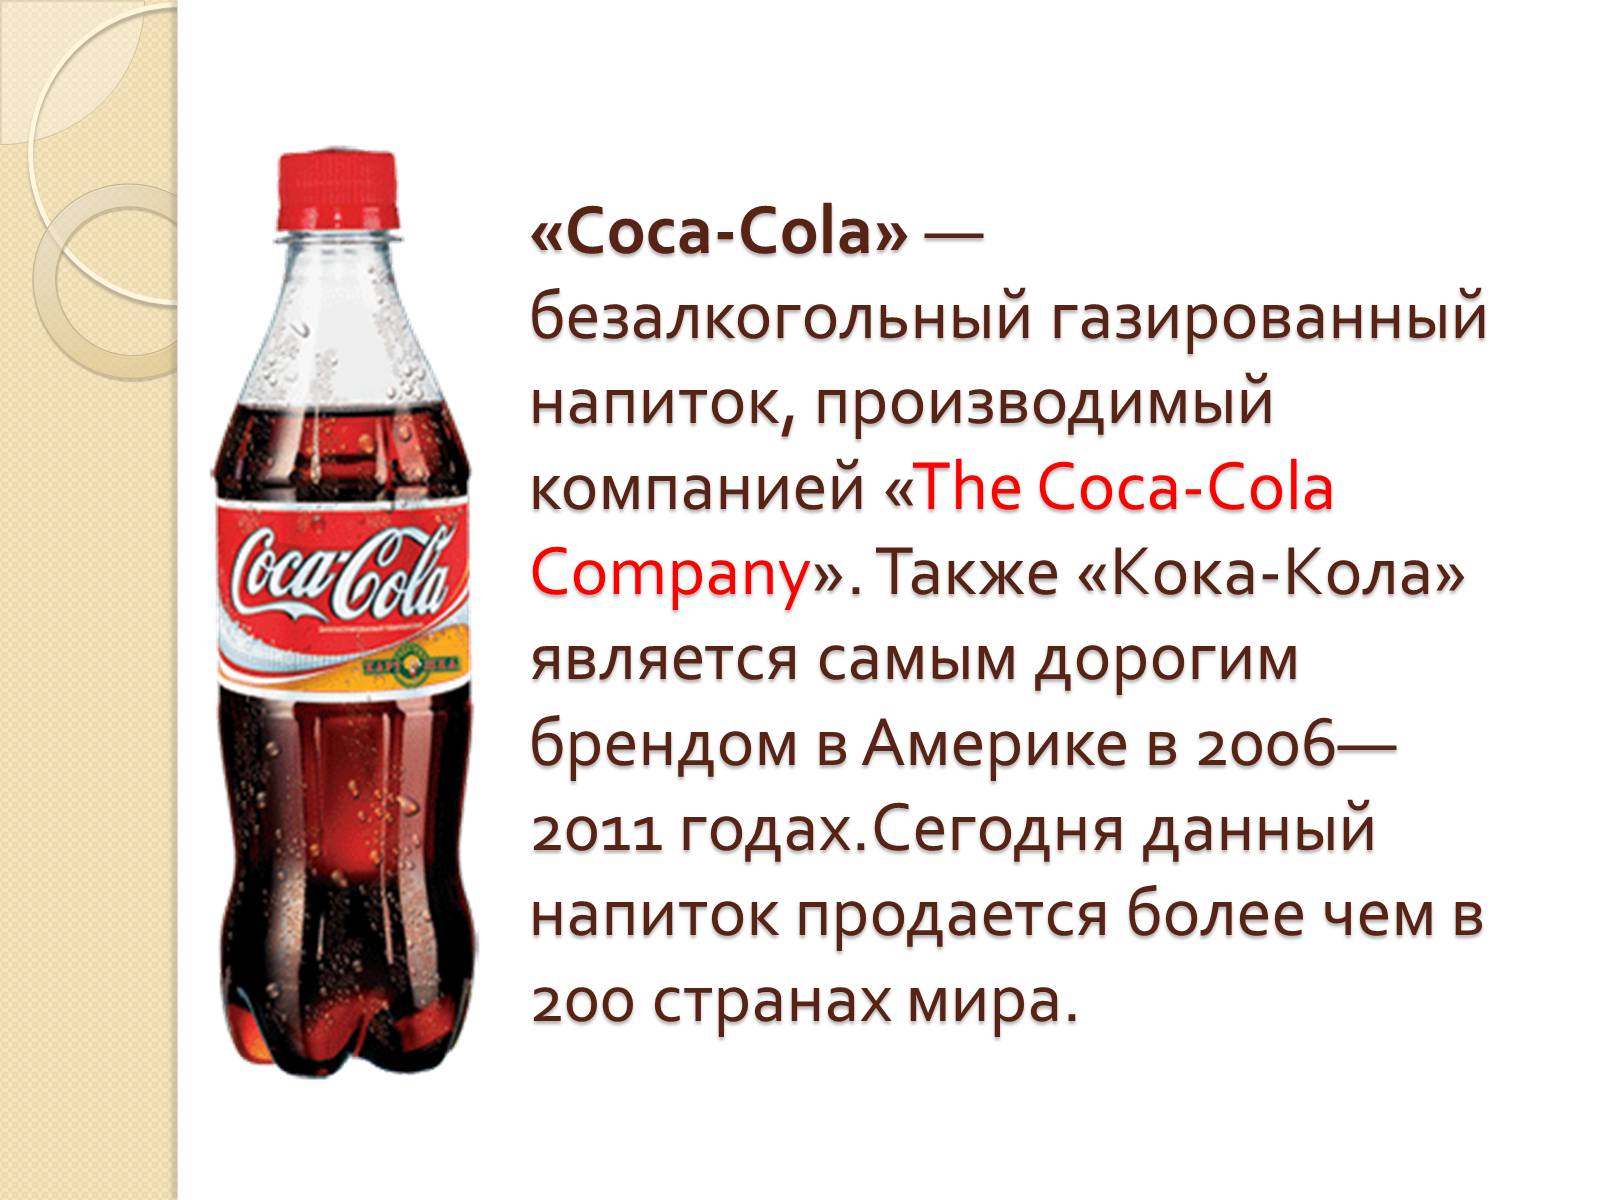 Реклама про Кока колу